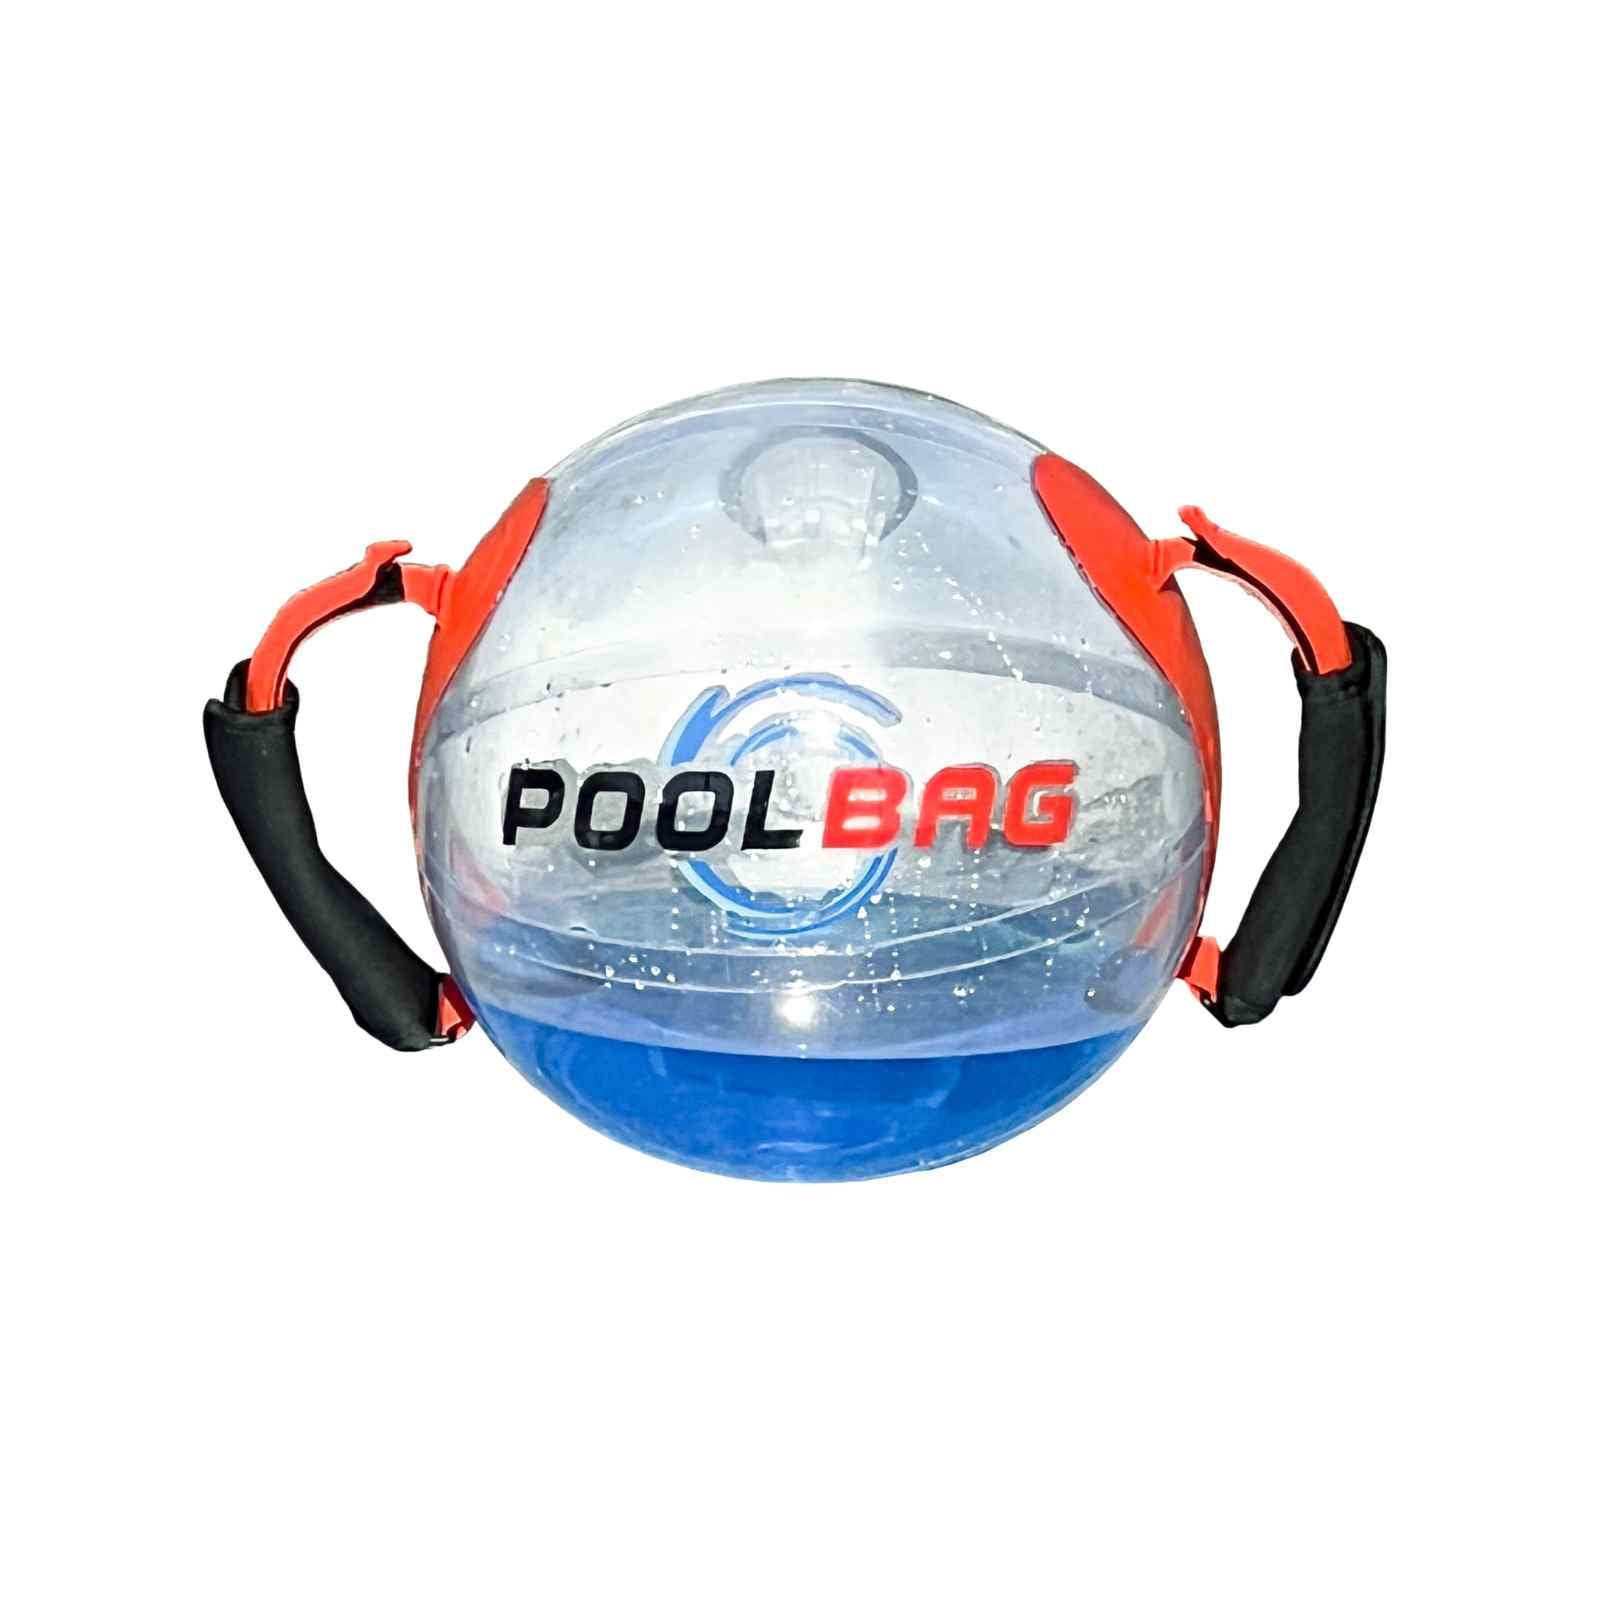 Poolball - Allenamento Funzionale in Piscina - Massimo carico 20 lt